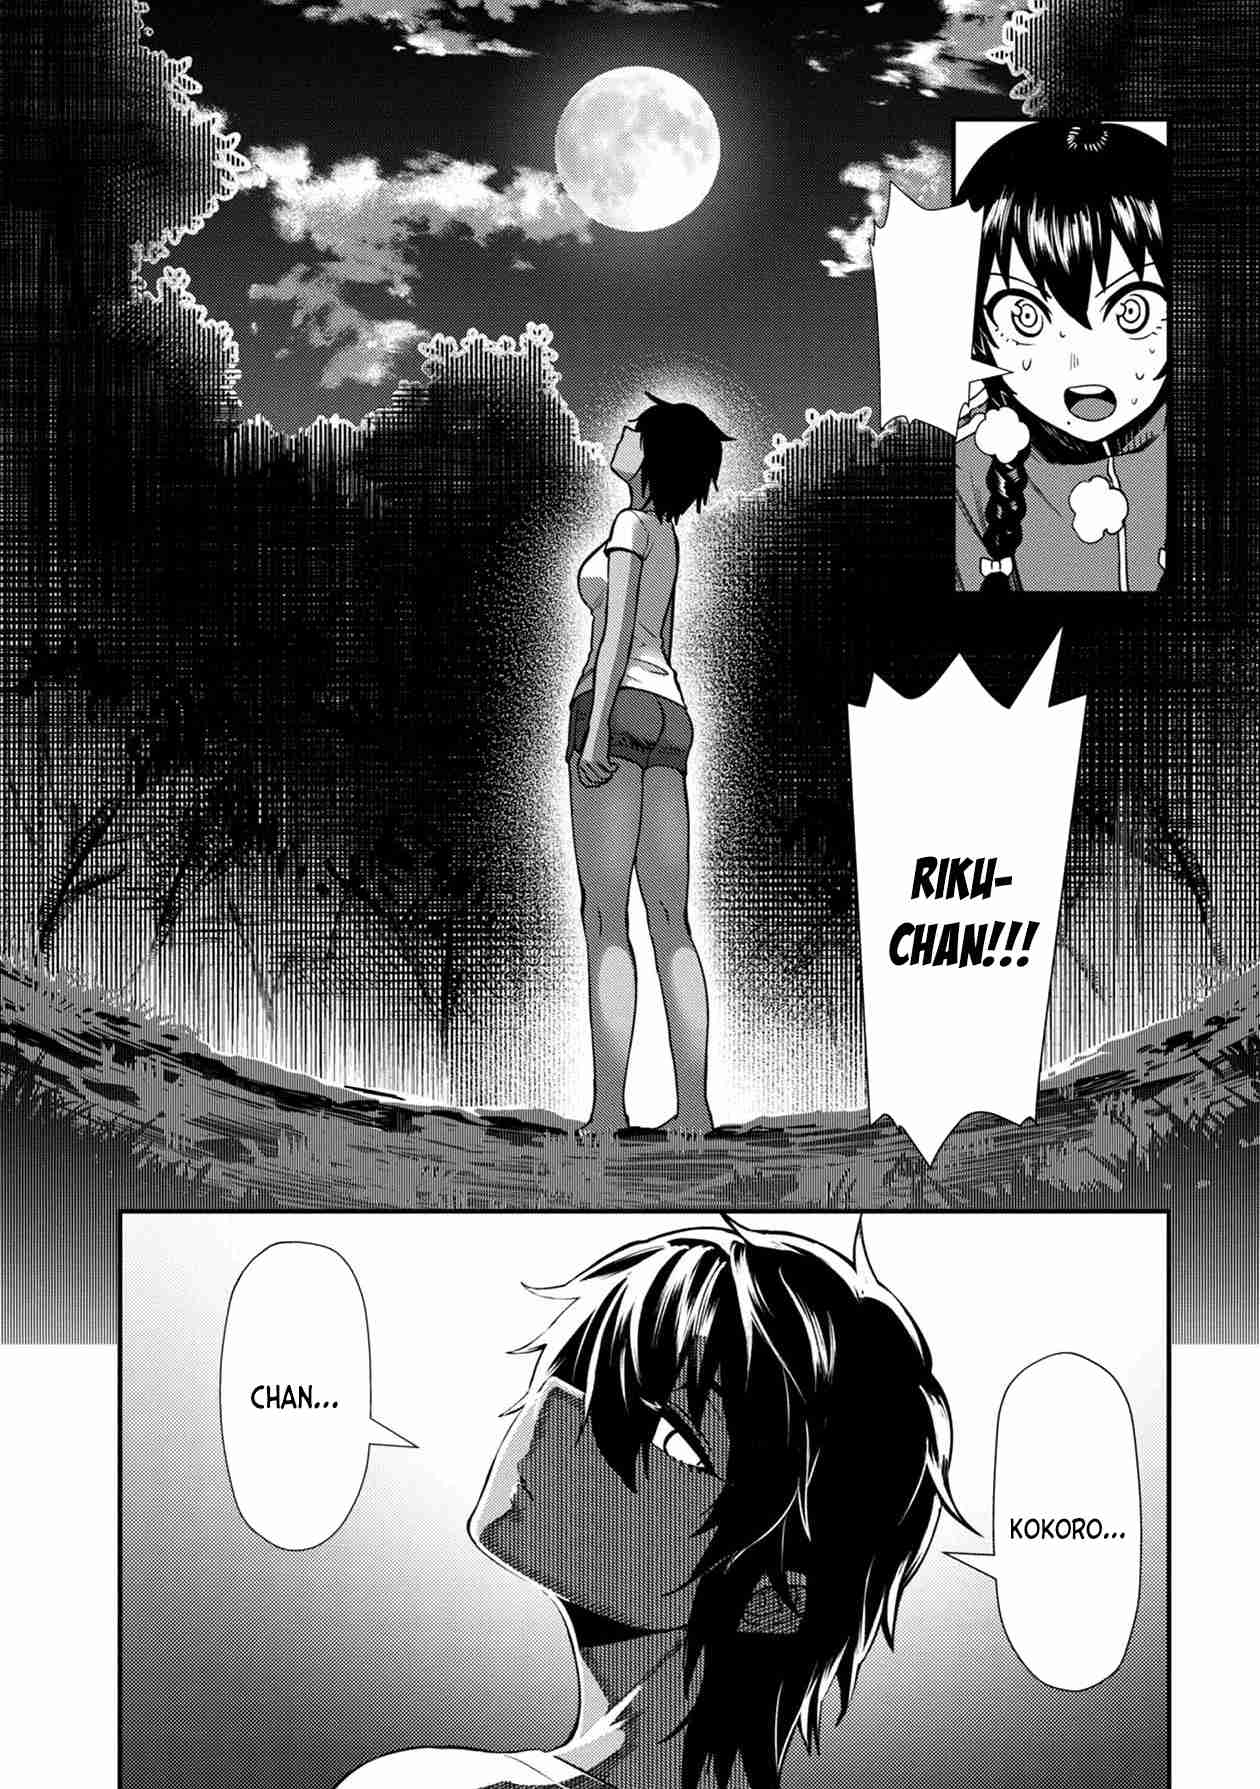 Furyou Taimashi Reina Vol. 1 Ch. 5 Exorcism #5 Kokoro And Riku